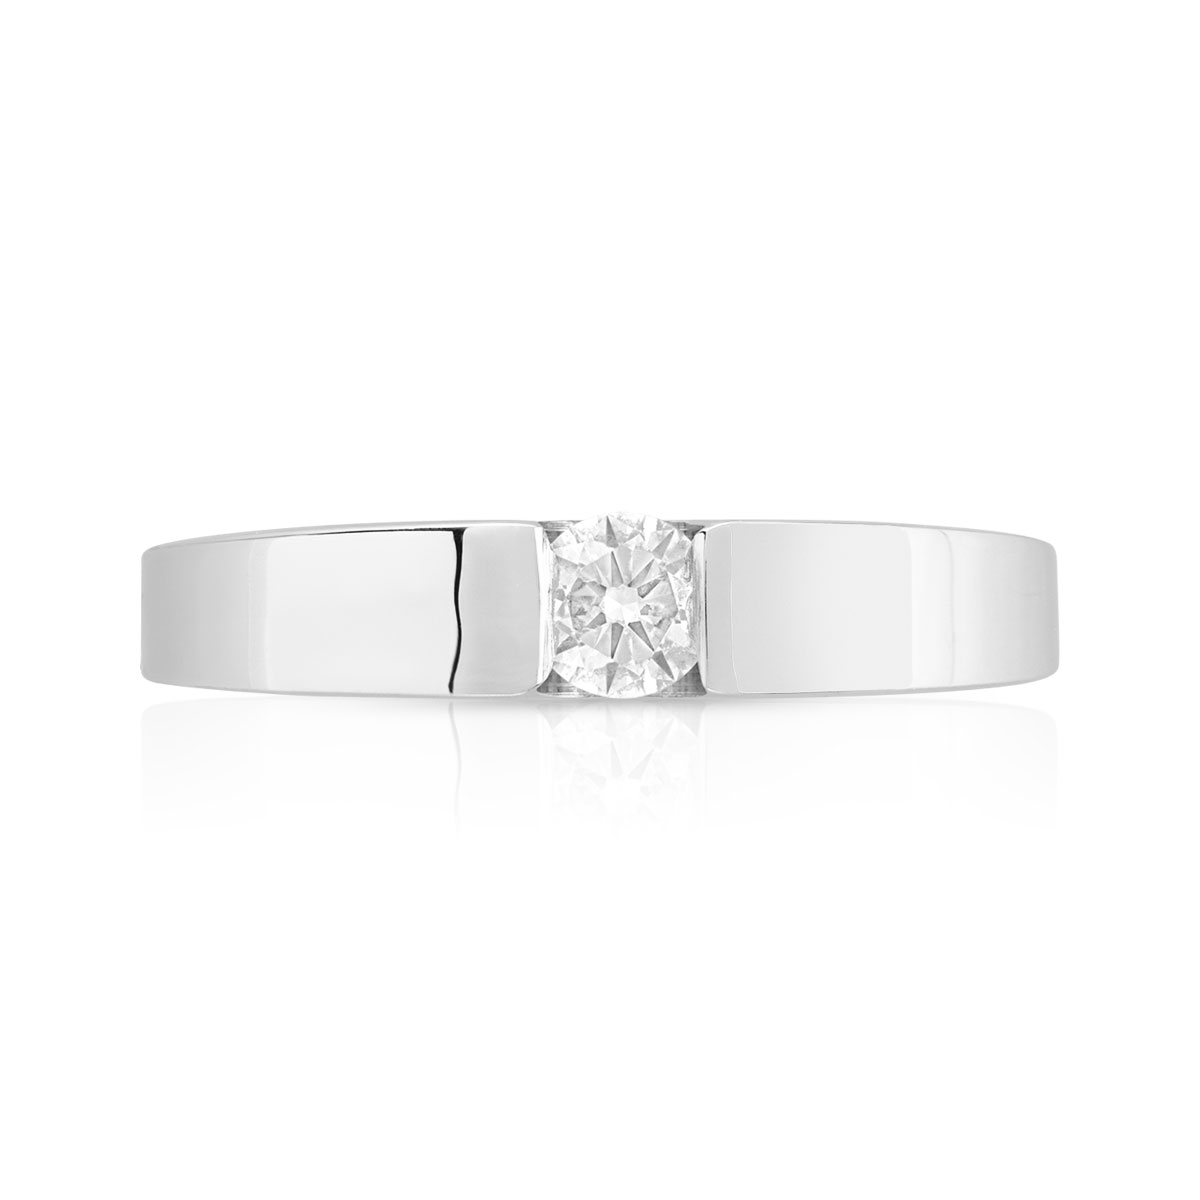 Bague solitaire or 750 blanc diamant synthétique 0.20 carat - vue 3